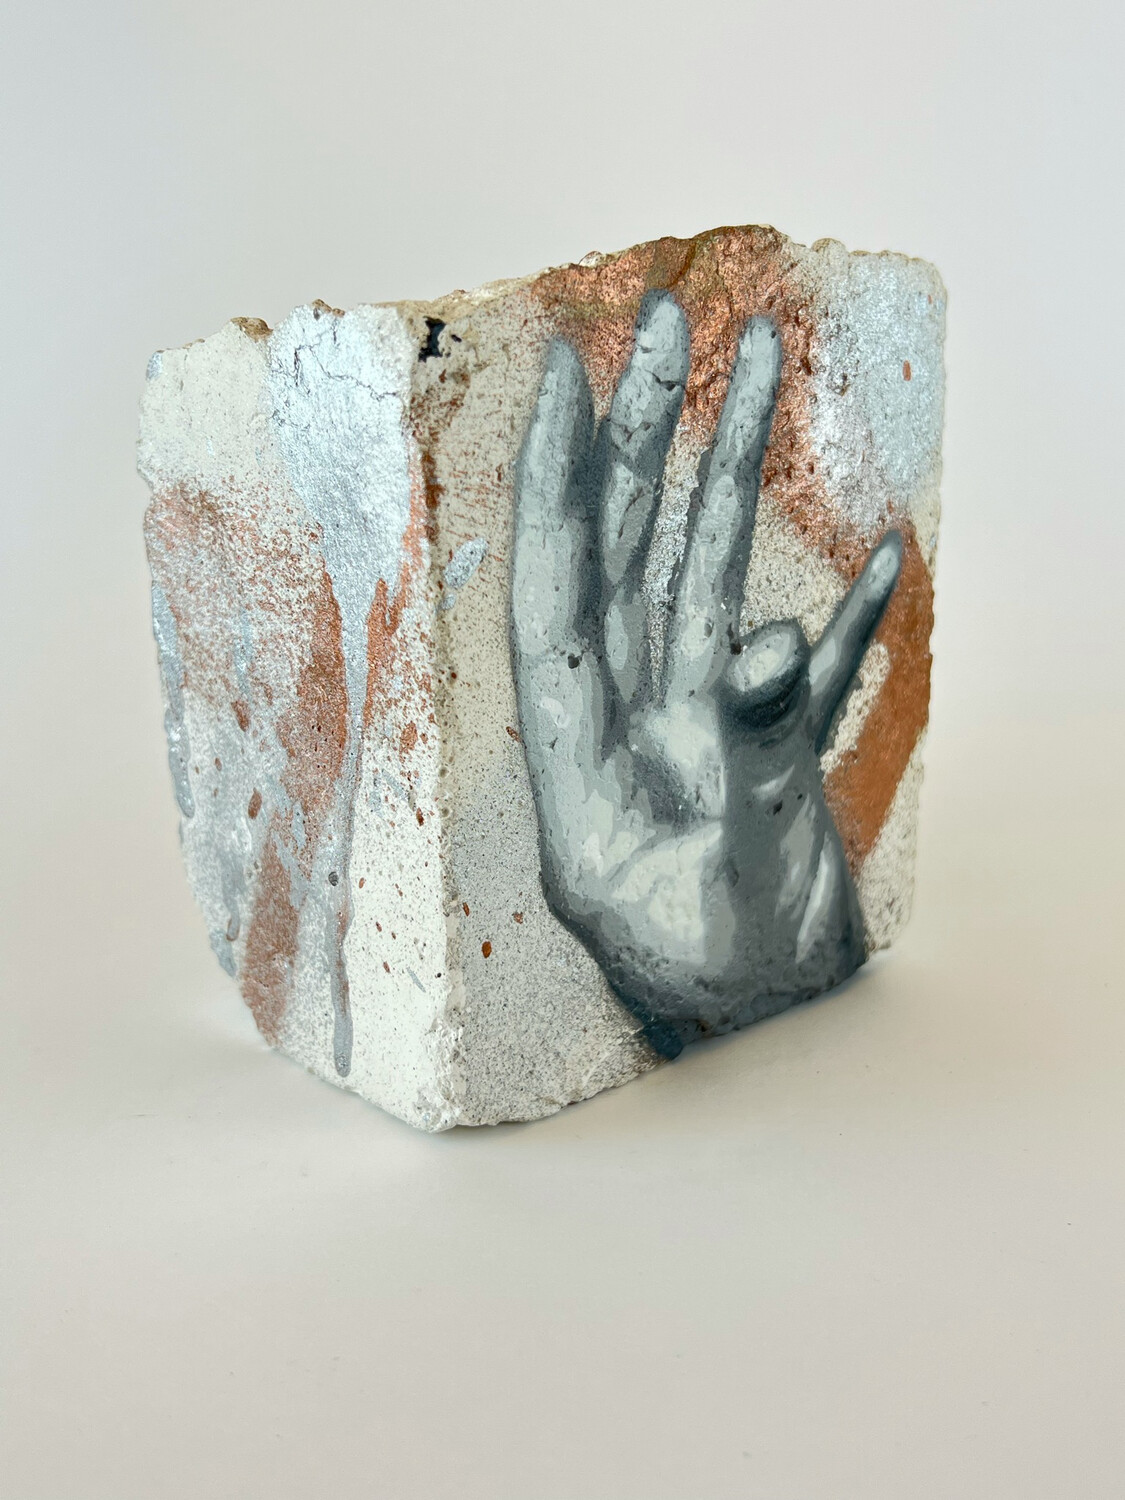 Sculpture - Brick “ Hand “ by VONDIECHE